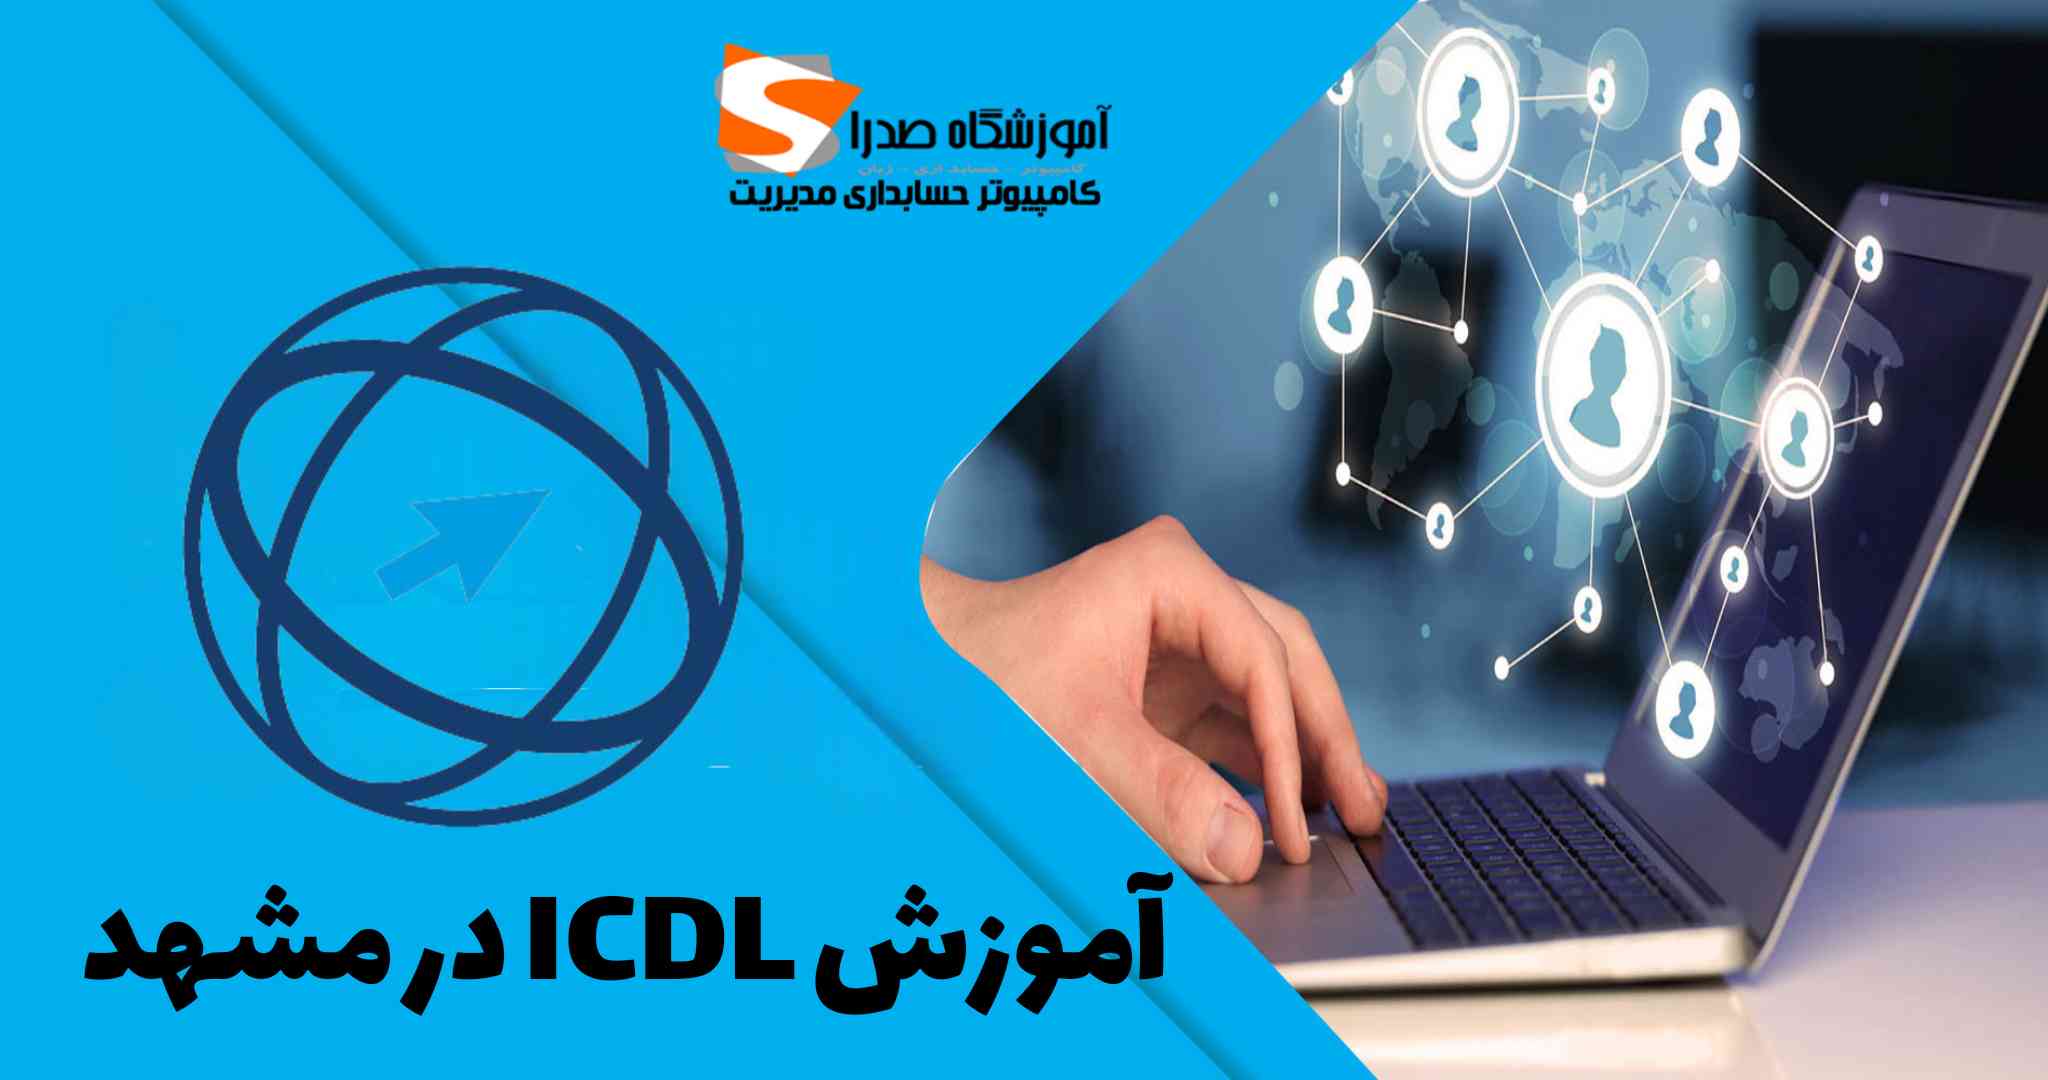 آموزش Icdl در مشهد